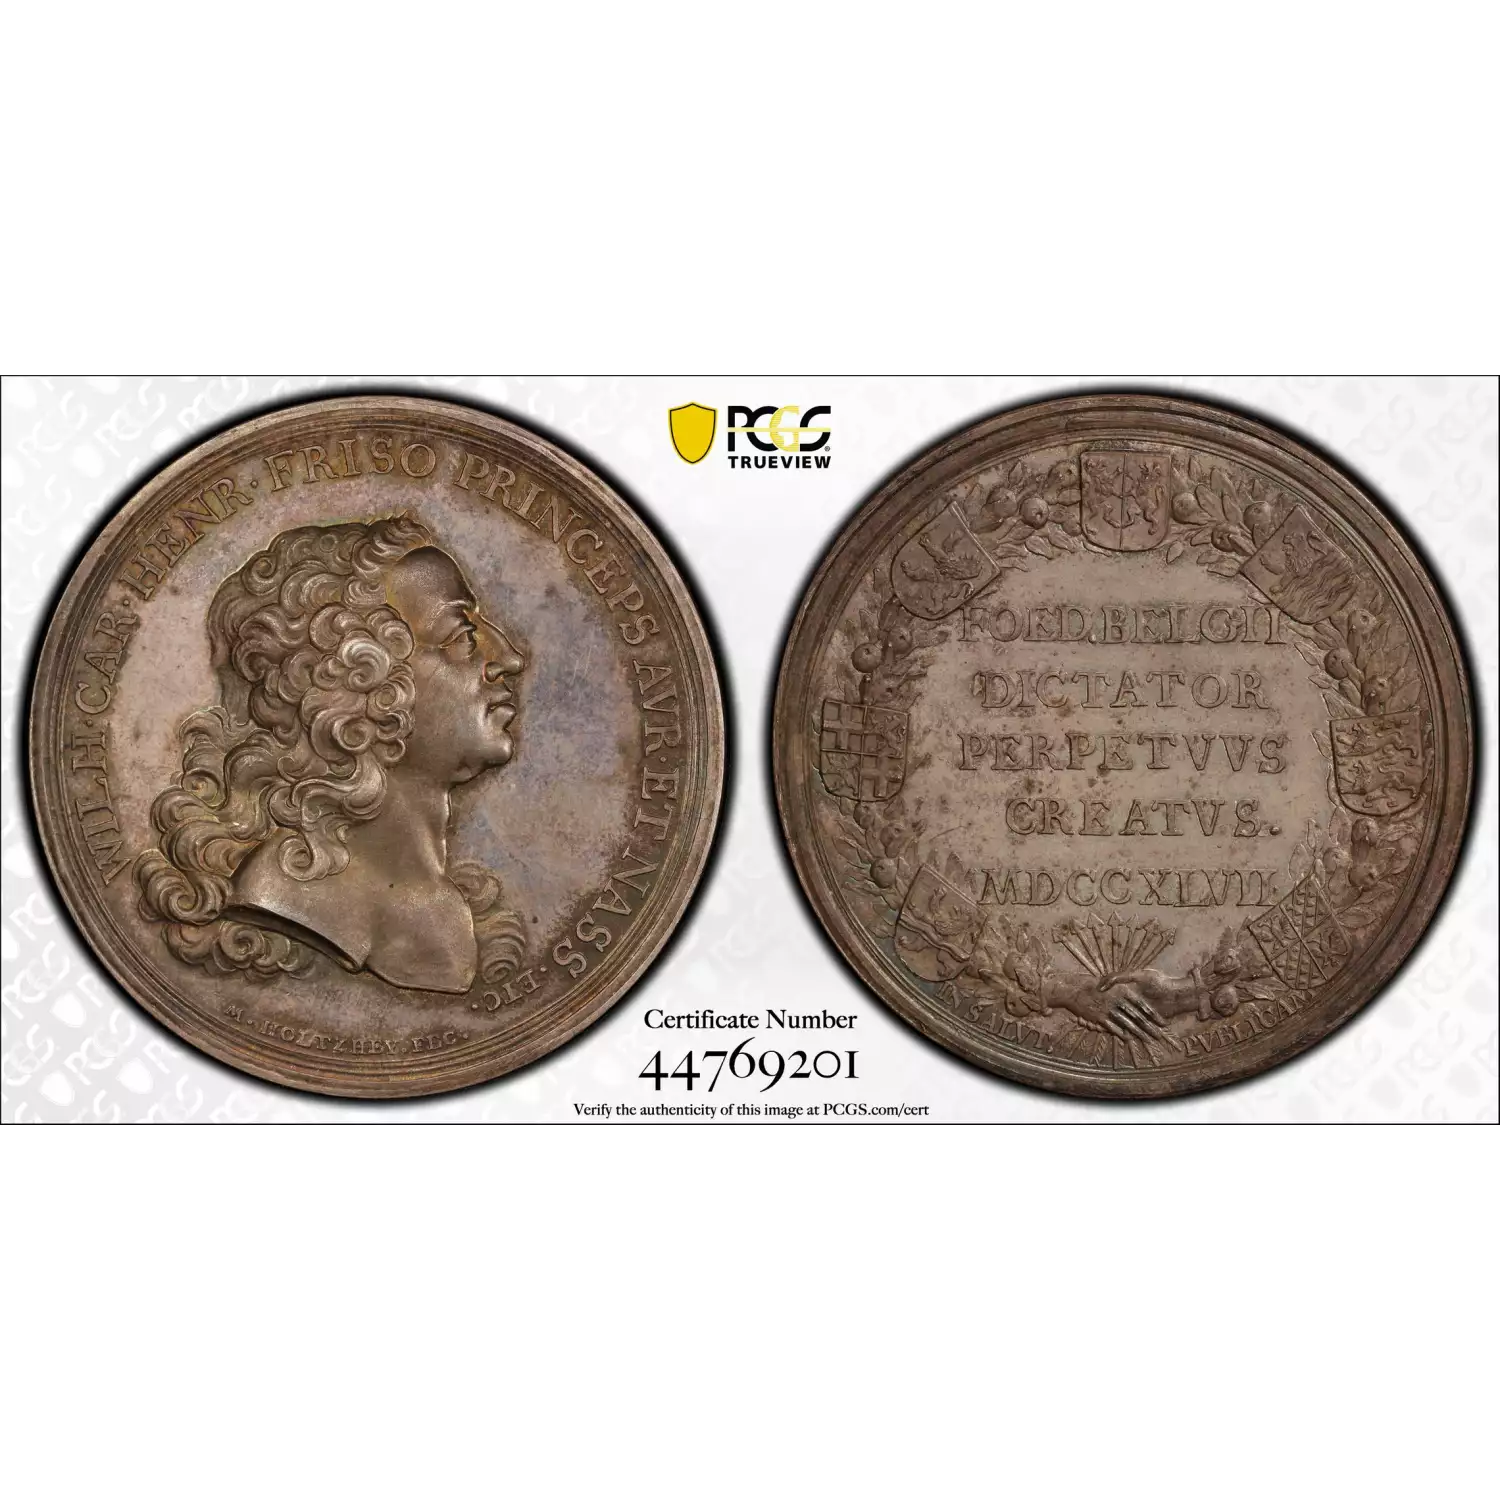 1747 Medal Van Loon-246 Silver William IV